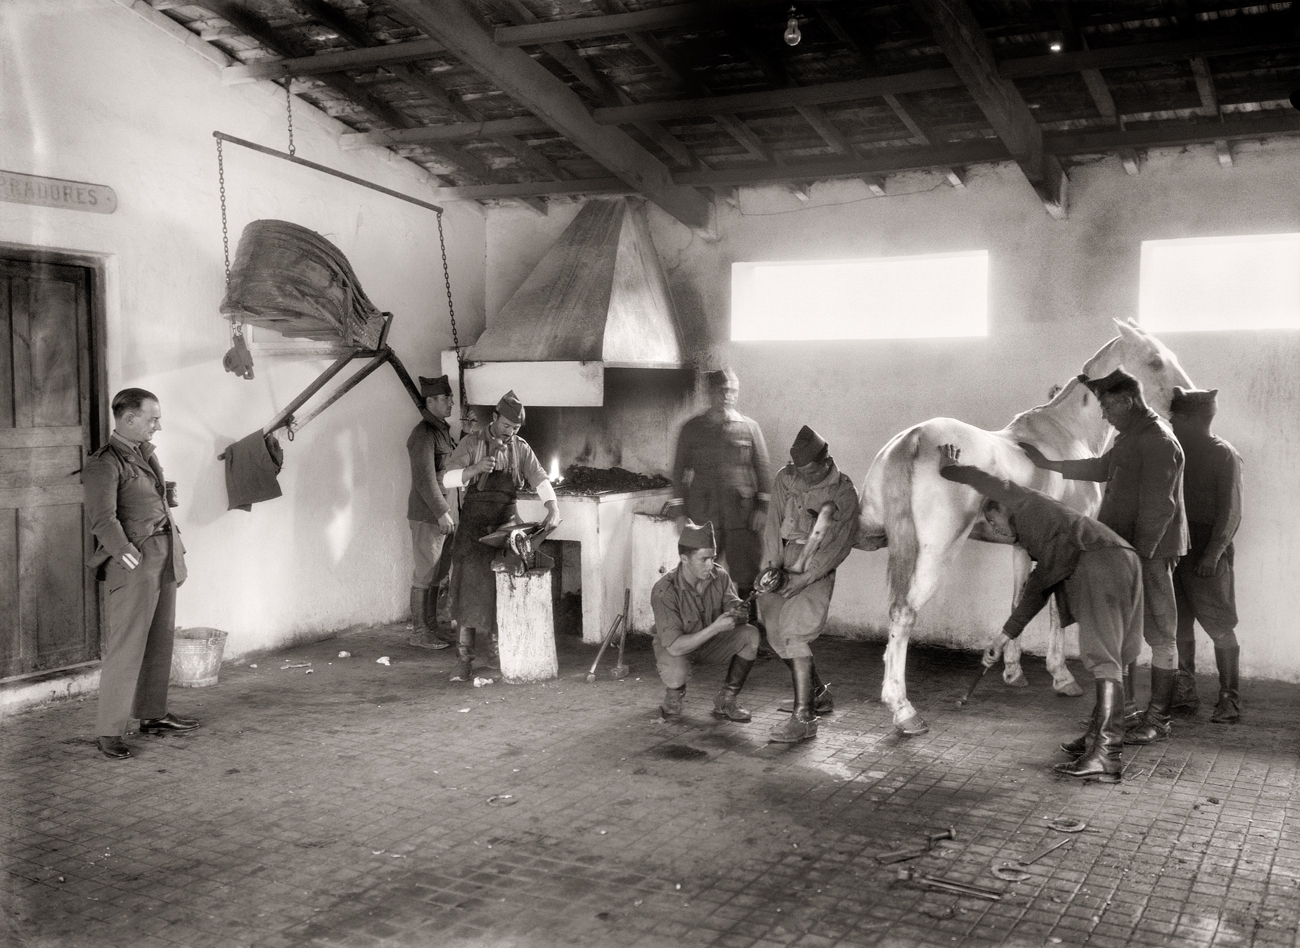 Herradero del Cuartel de La Legión, en Dar Riffien, 1926<br/>Gelatina de plata / Silver gelatin